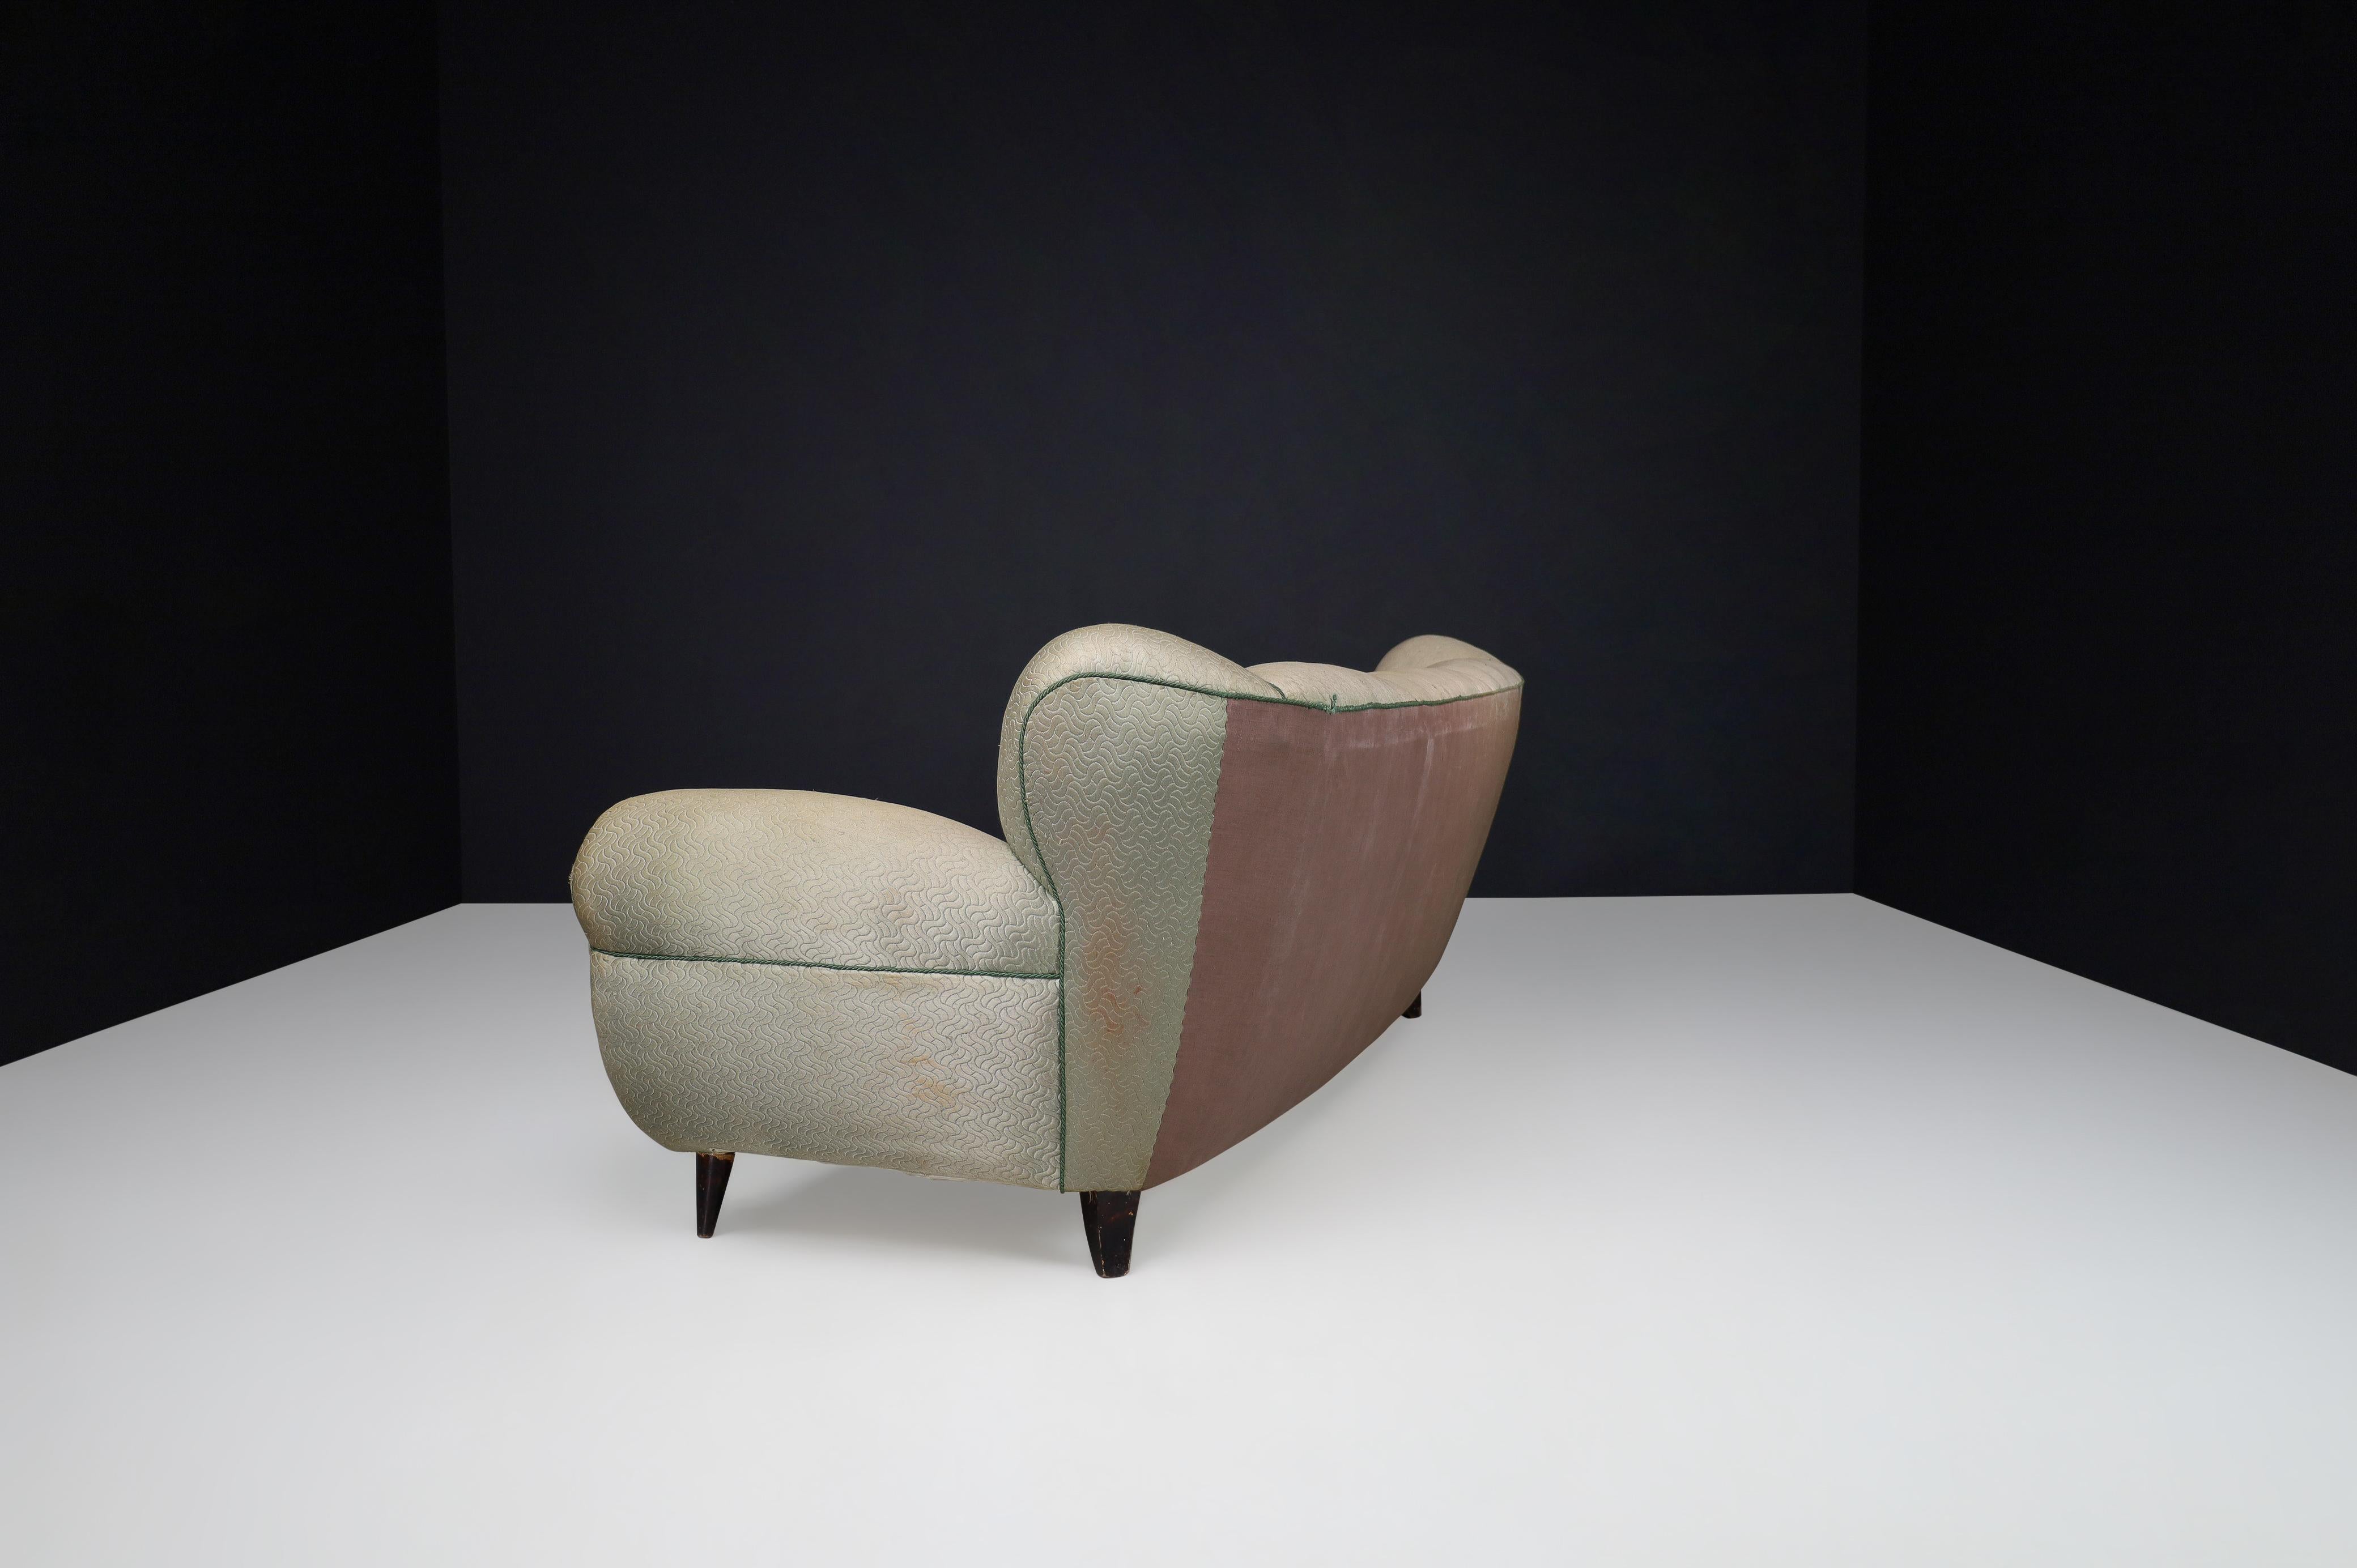 Guglielmo Ulrich Art Deco Sofa in Original Fabric, Italy 1930s For Sale 3